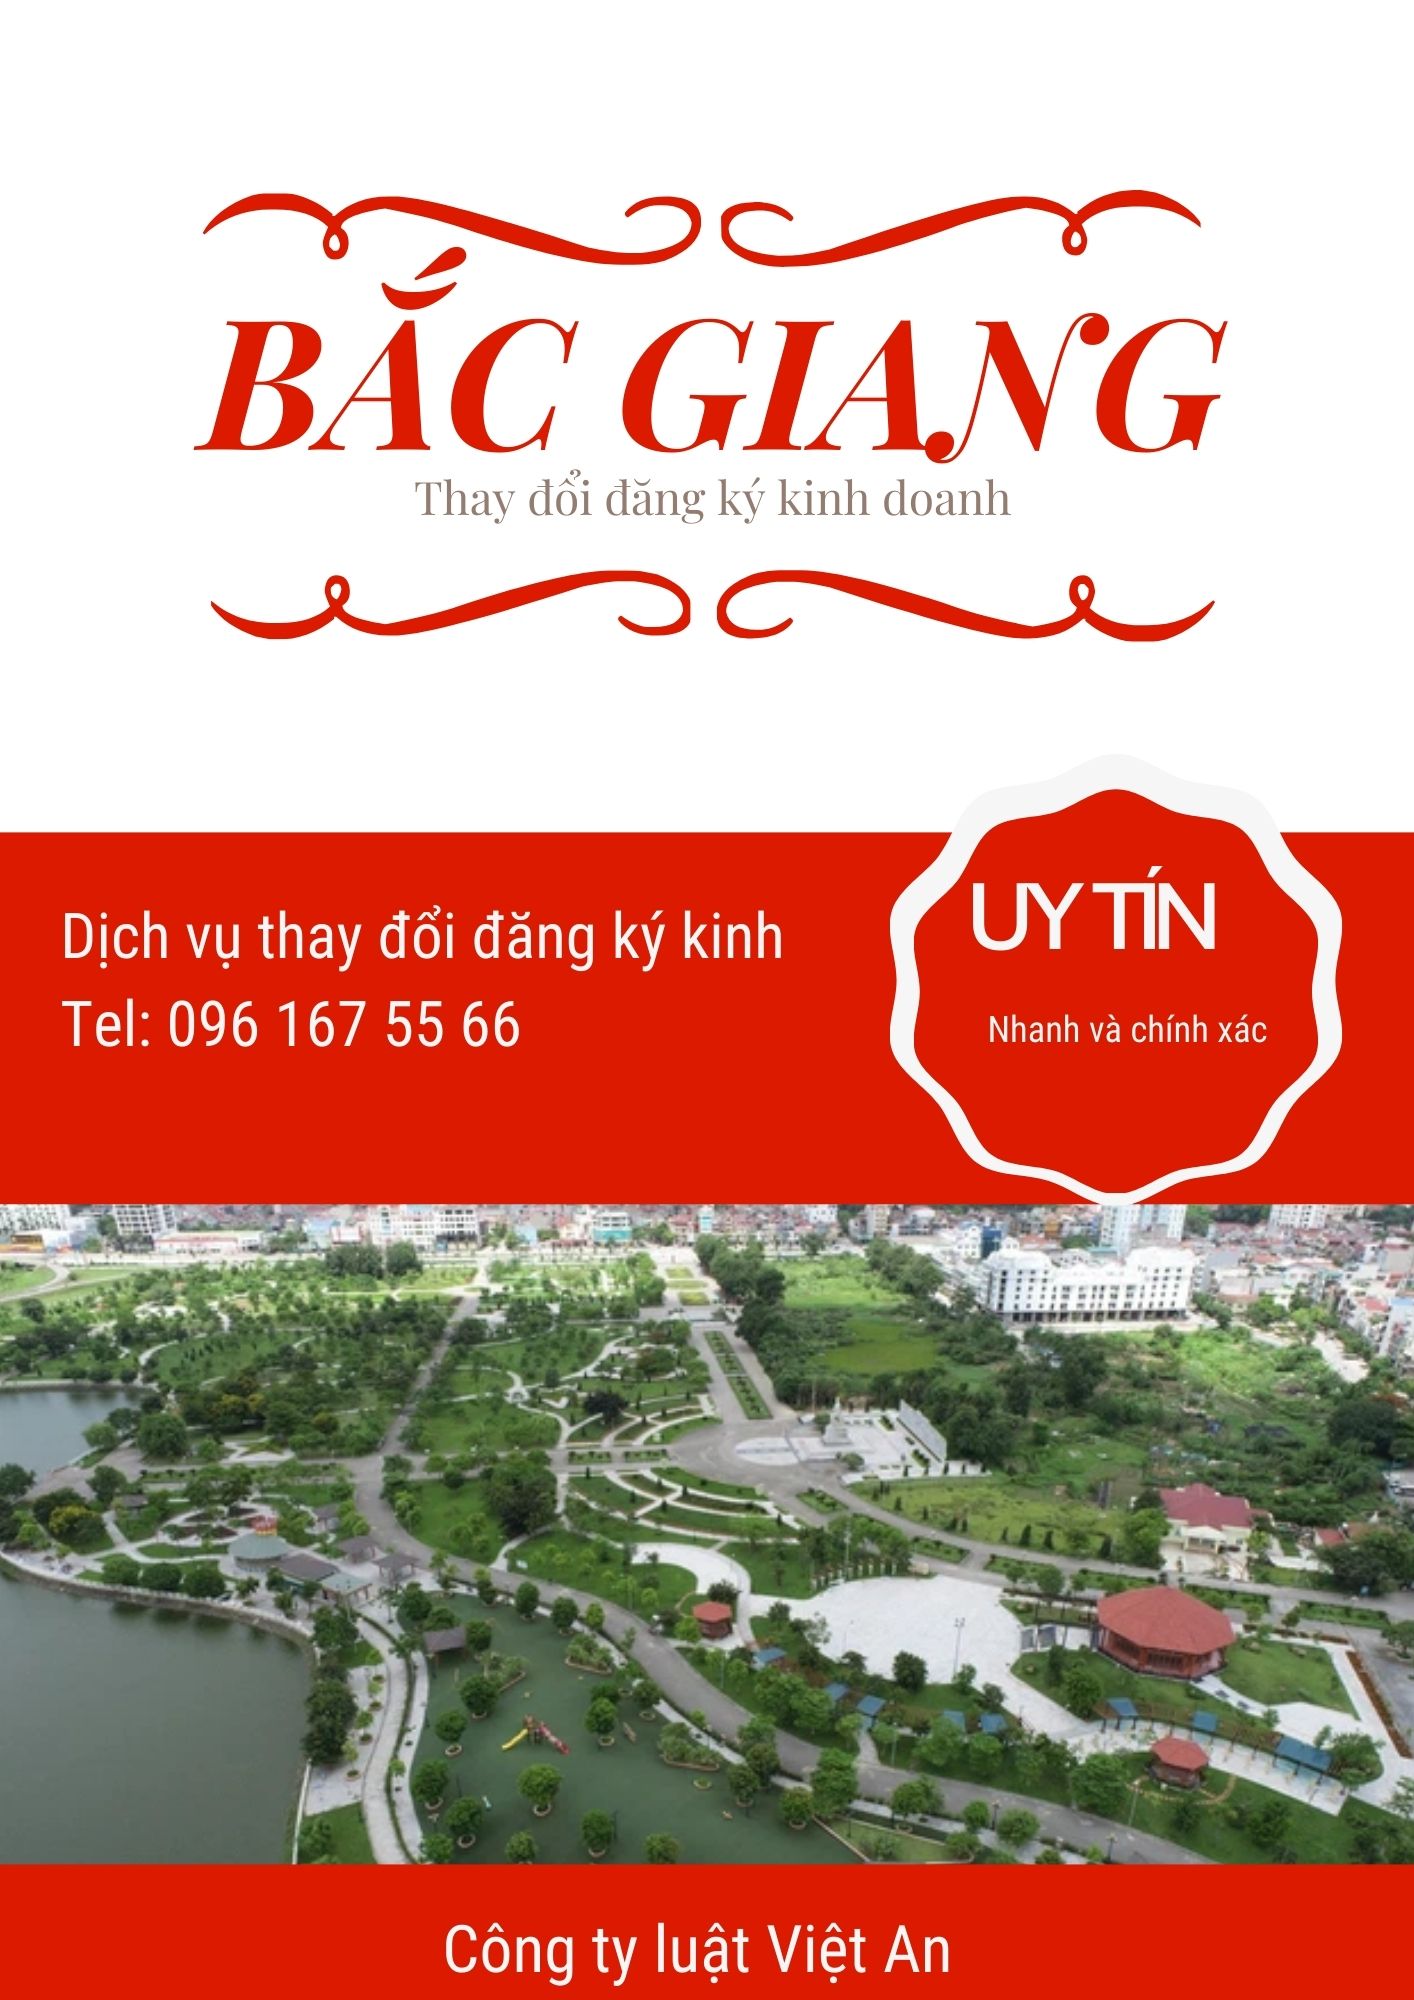 Thay đổi đăng ký kinh doanh tại Bắc Giang